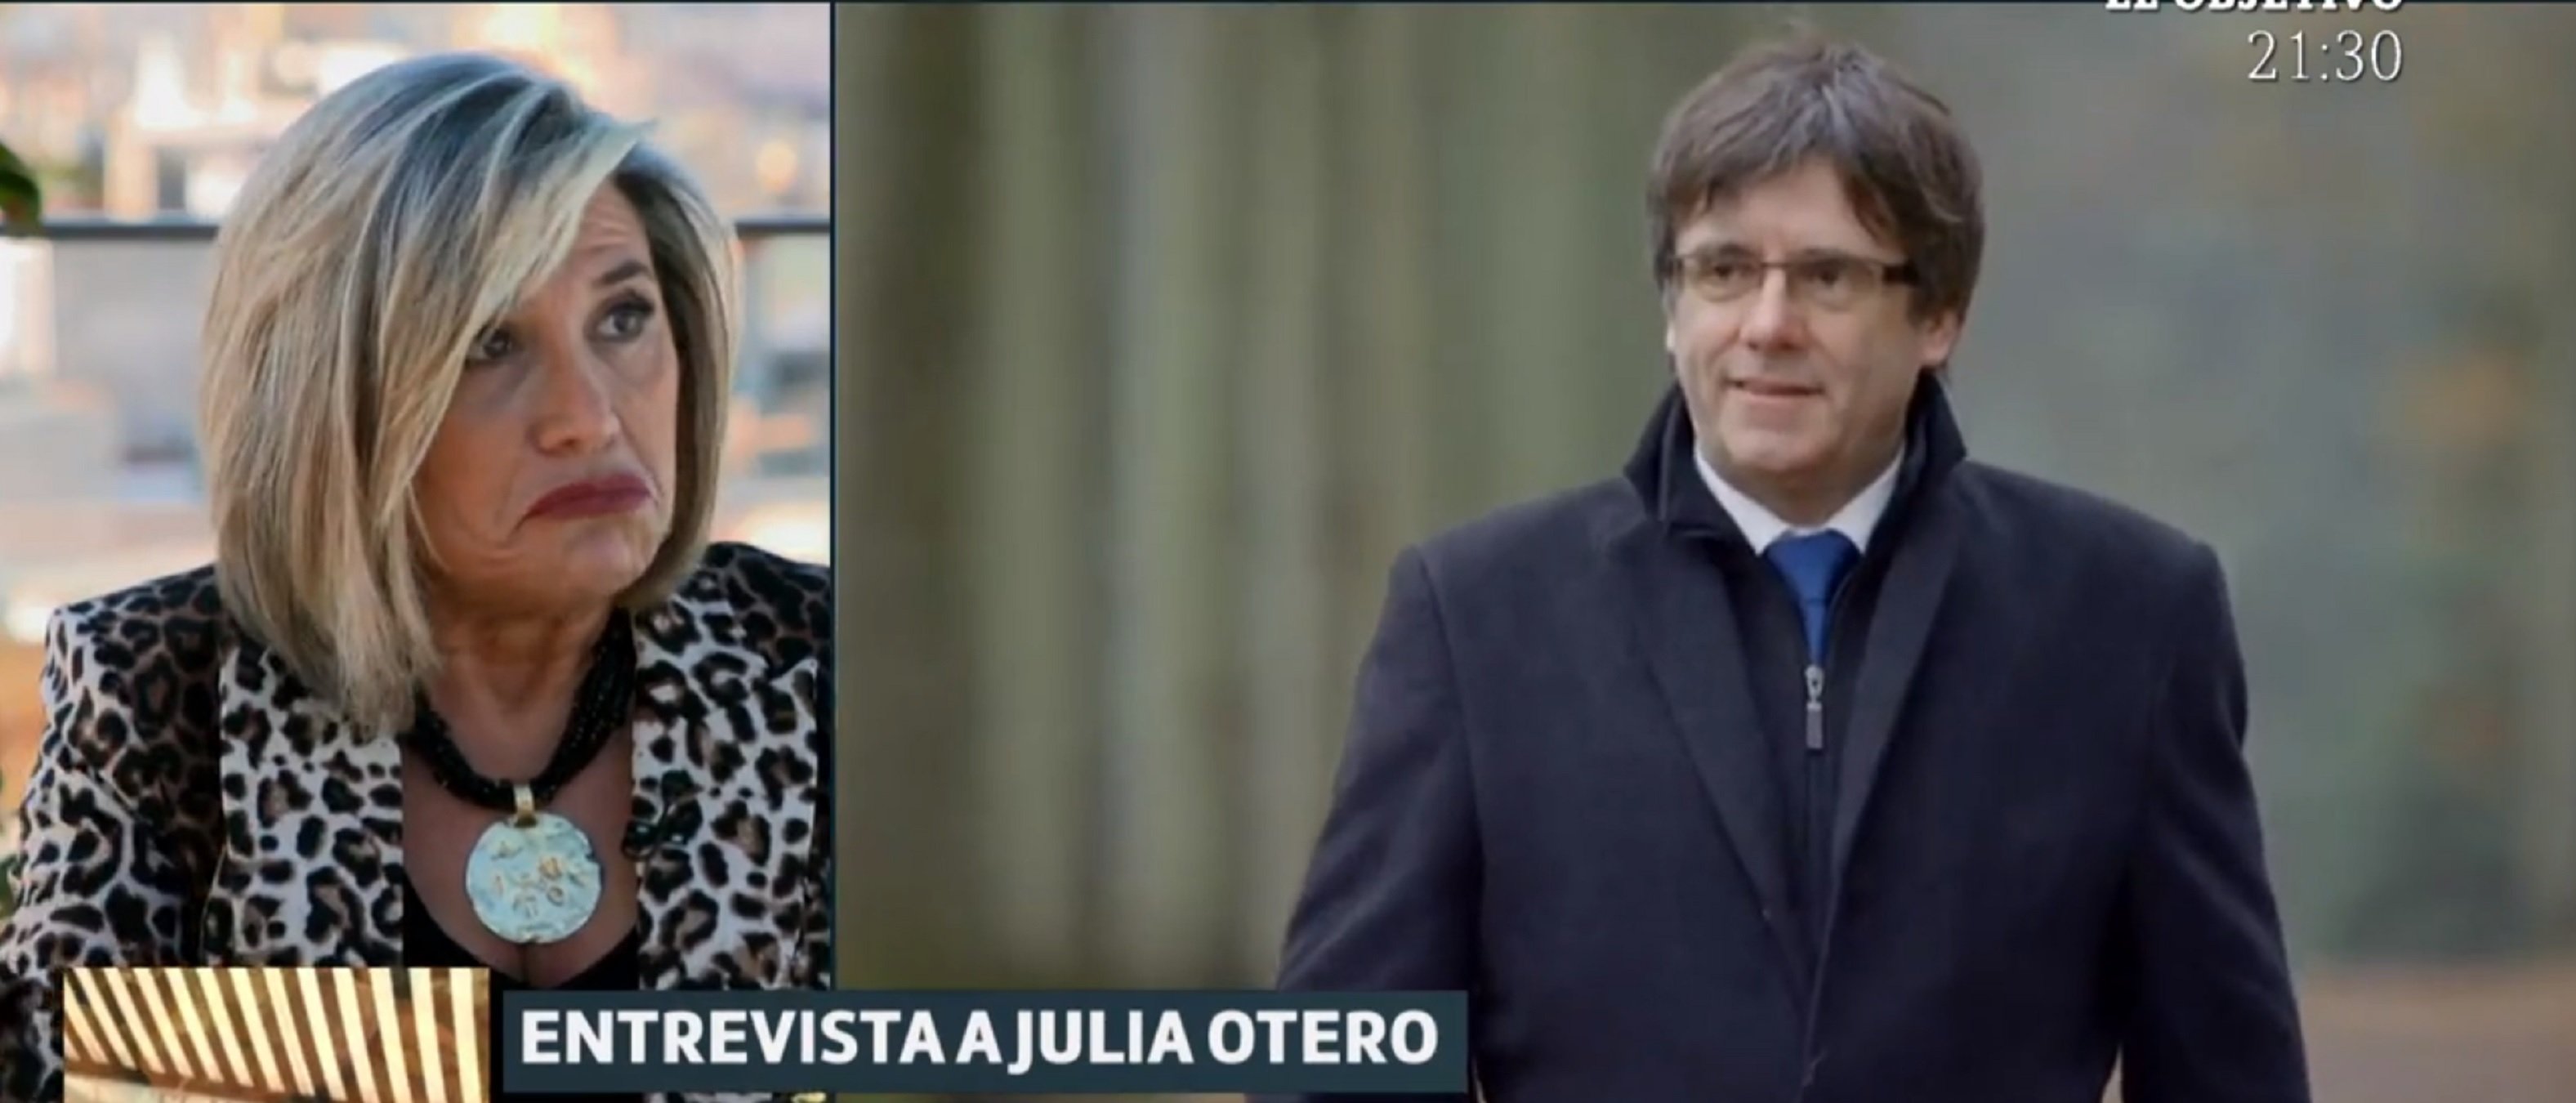 Julia Otero destroza a Torra: "sin liderazgo" y Puigdemont: "un astronauta"